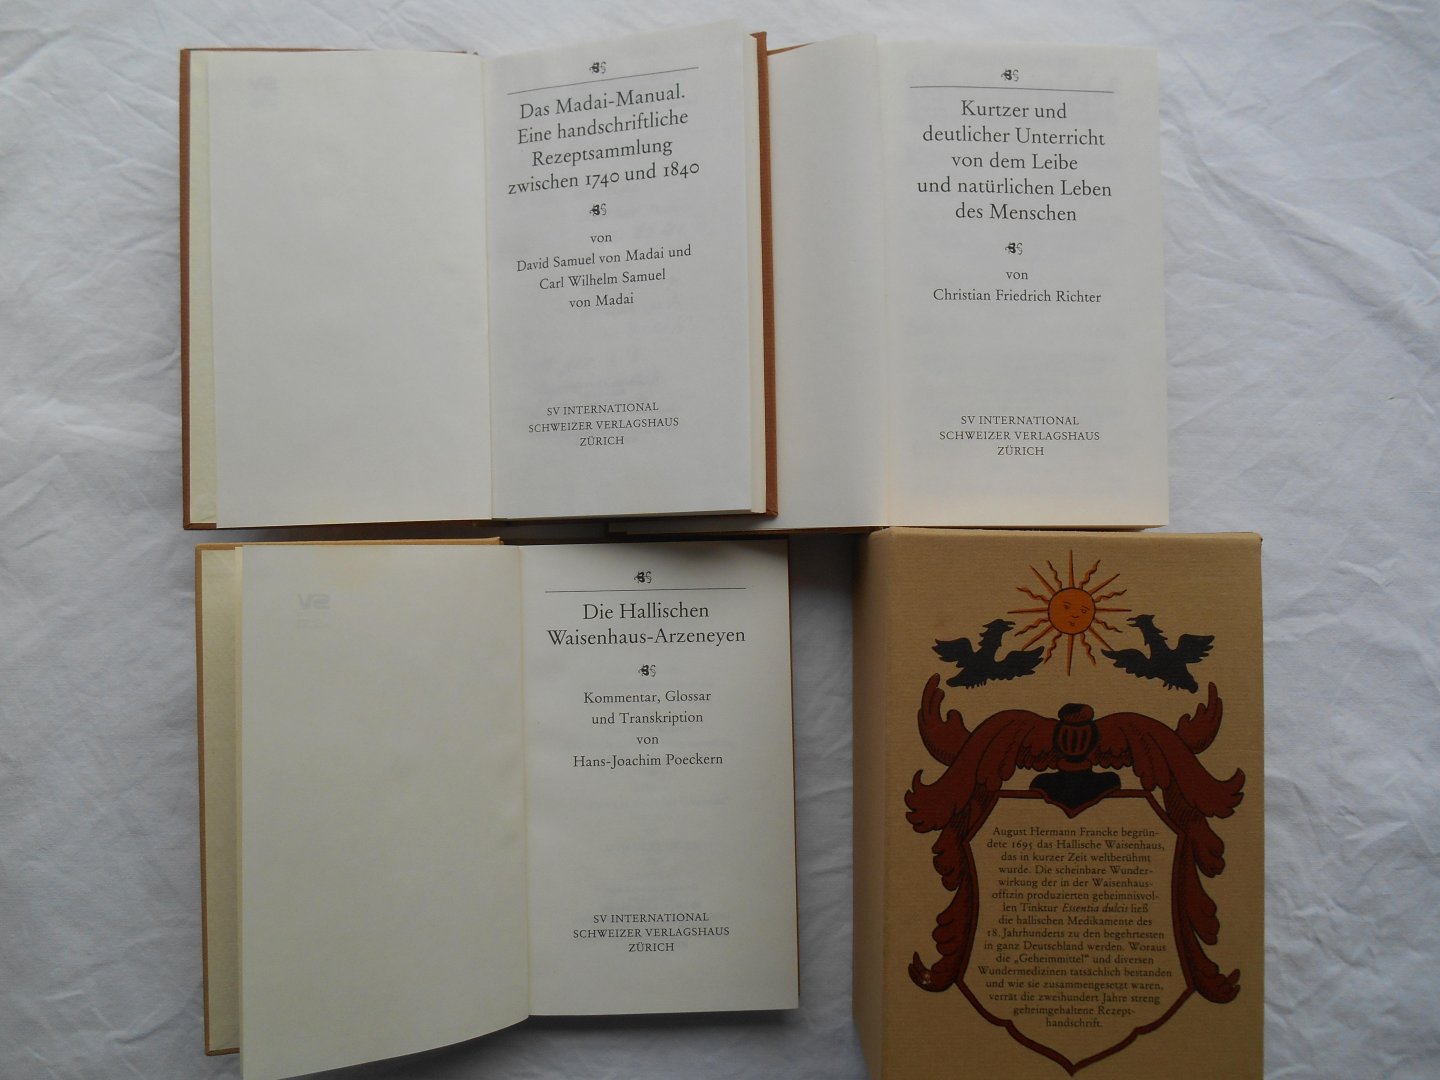 Poeckern, Hans-Joachim (Hrsg.) - Die Hallischen Waisenhaus-Arzeneyen - 3 Bände (komplett).